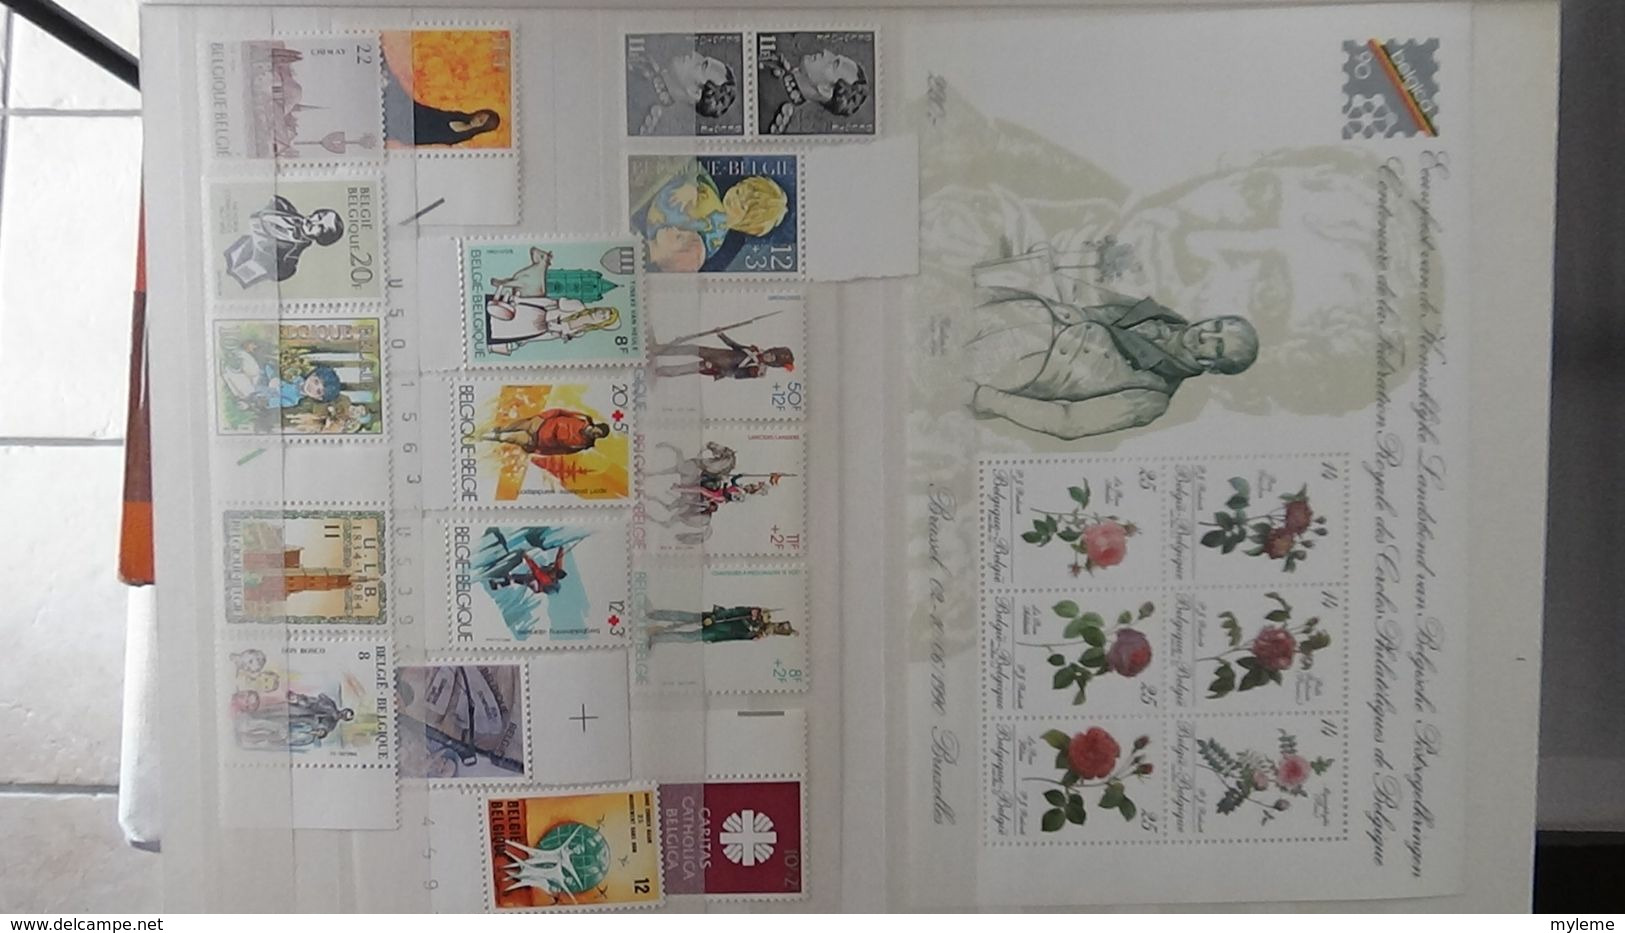 H121 Très belle collection de Belgique en timbres, carnets et blocs **. A saisir !!!